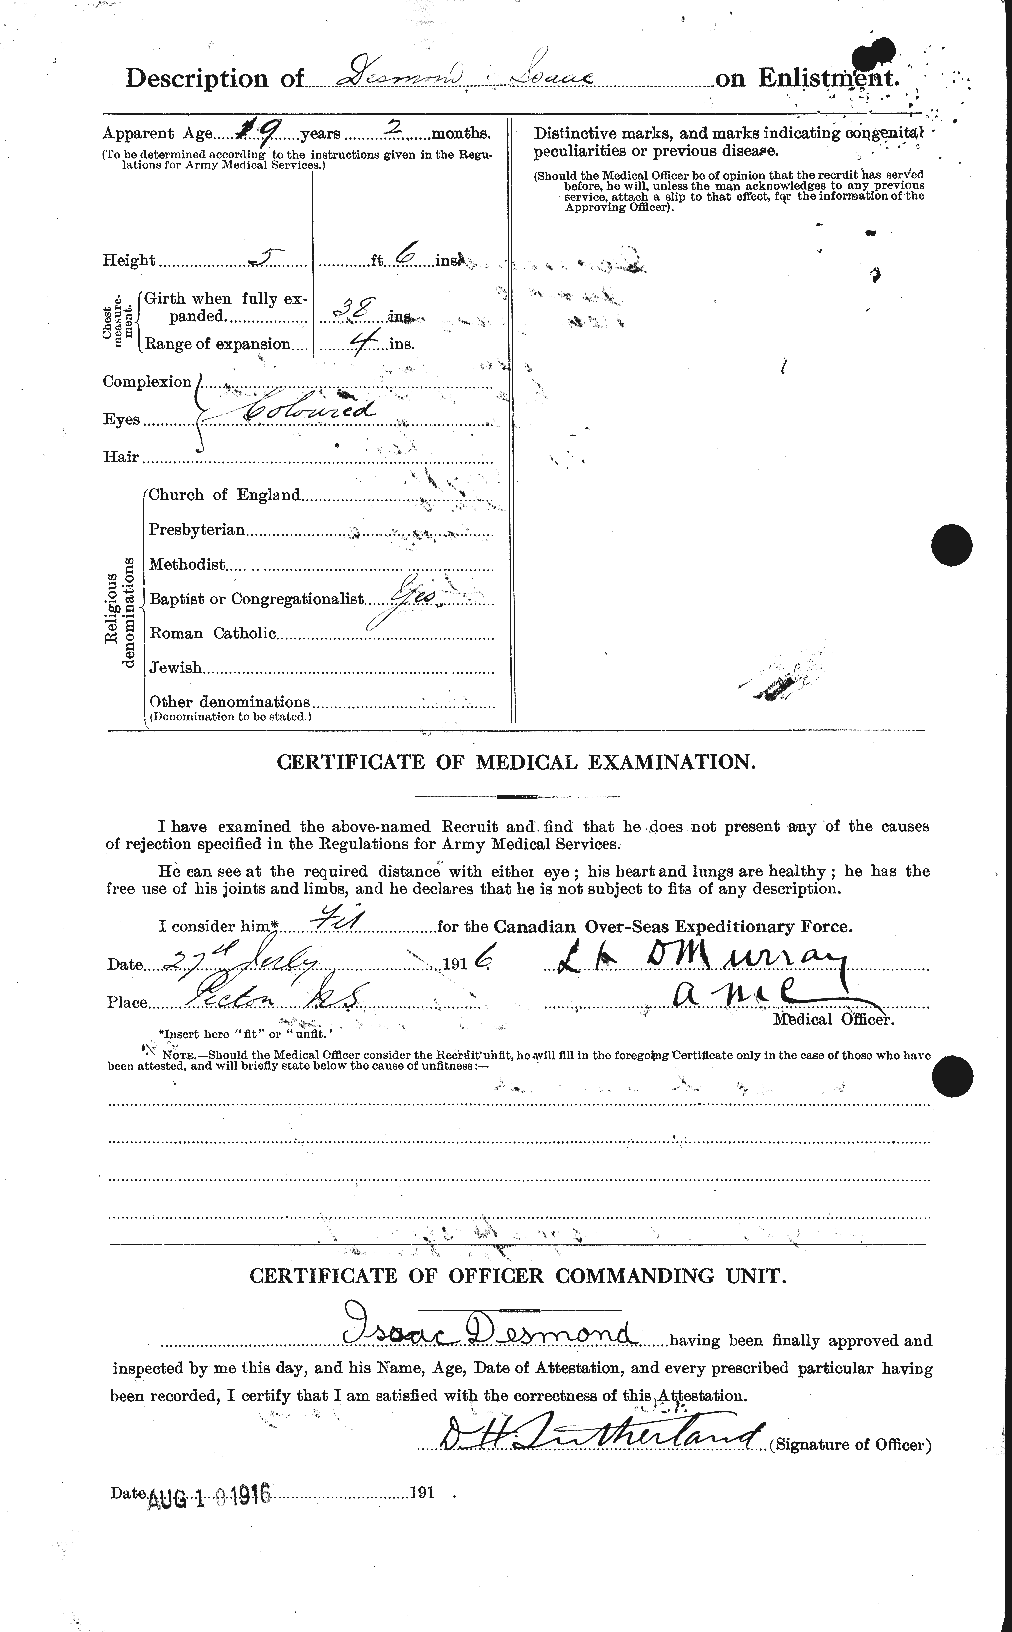 Dossiers du Personnel de la Première Guerre mondiale - CEC 291346b